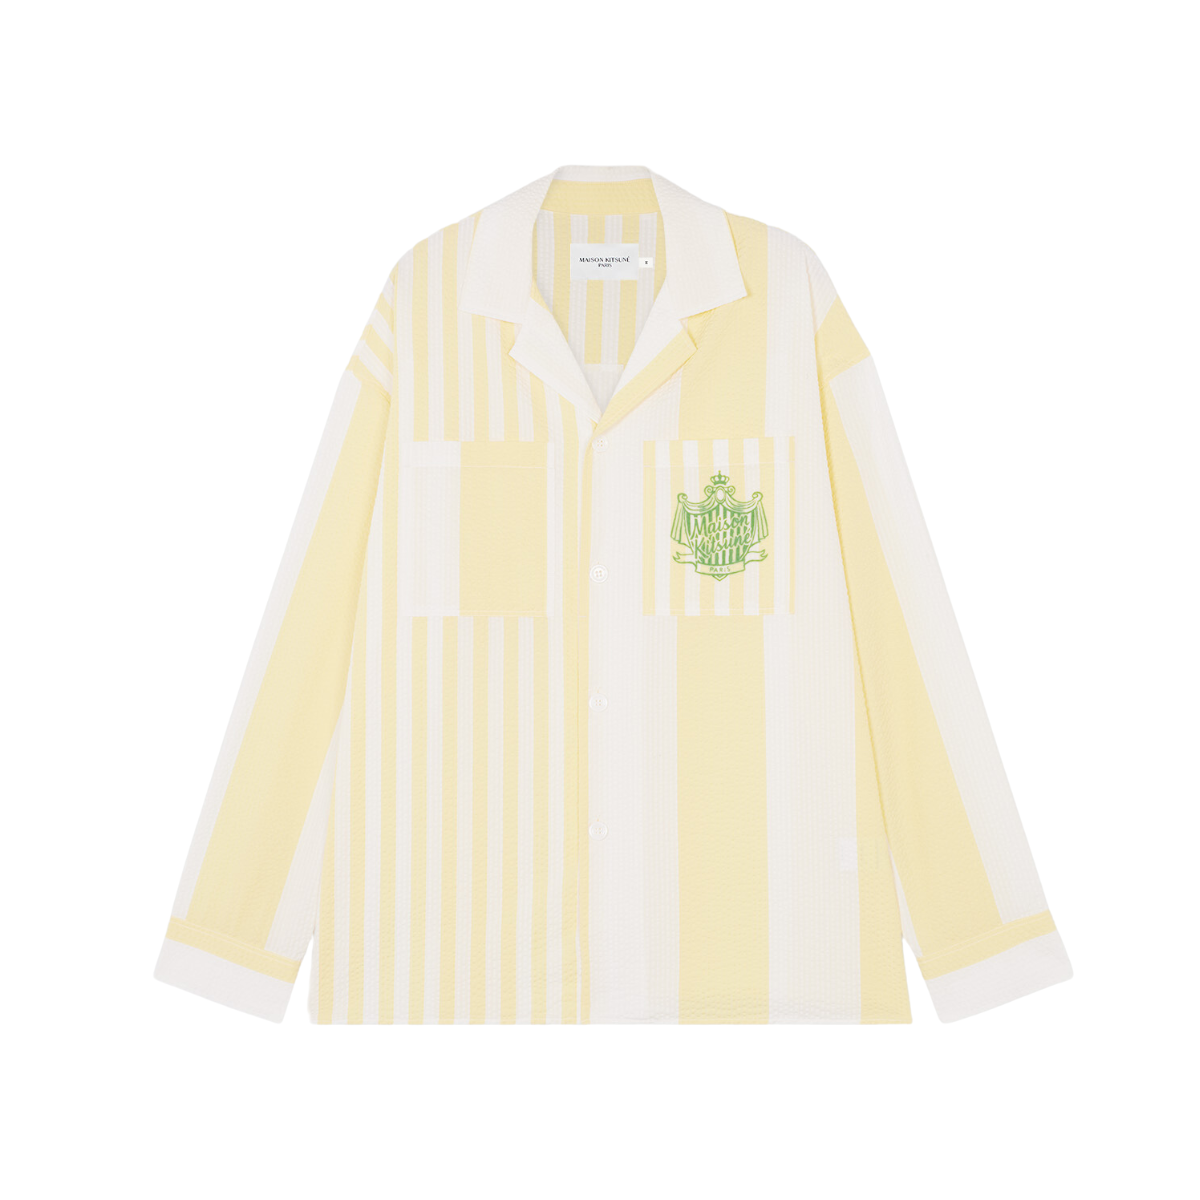 Maison Kitsune | overshirts for men - Poolside Stripes | lemon | kapok